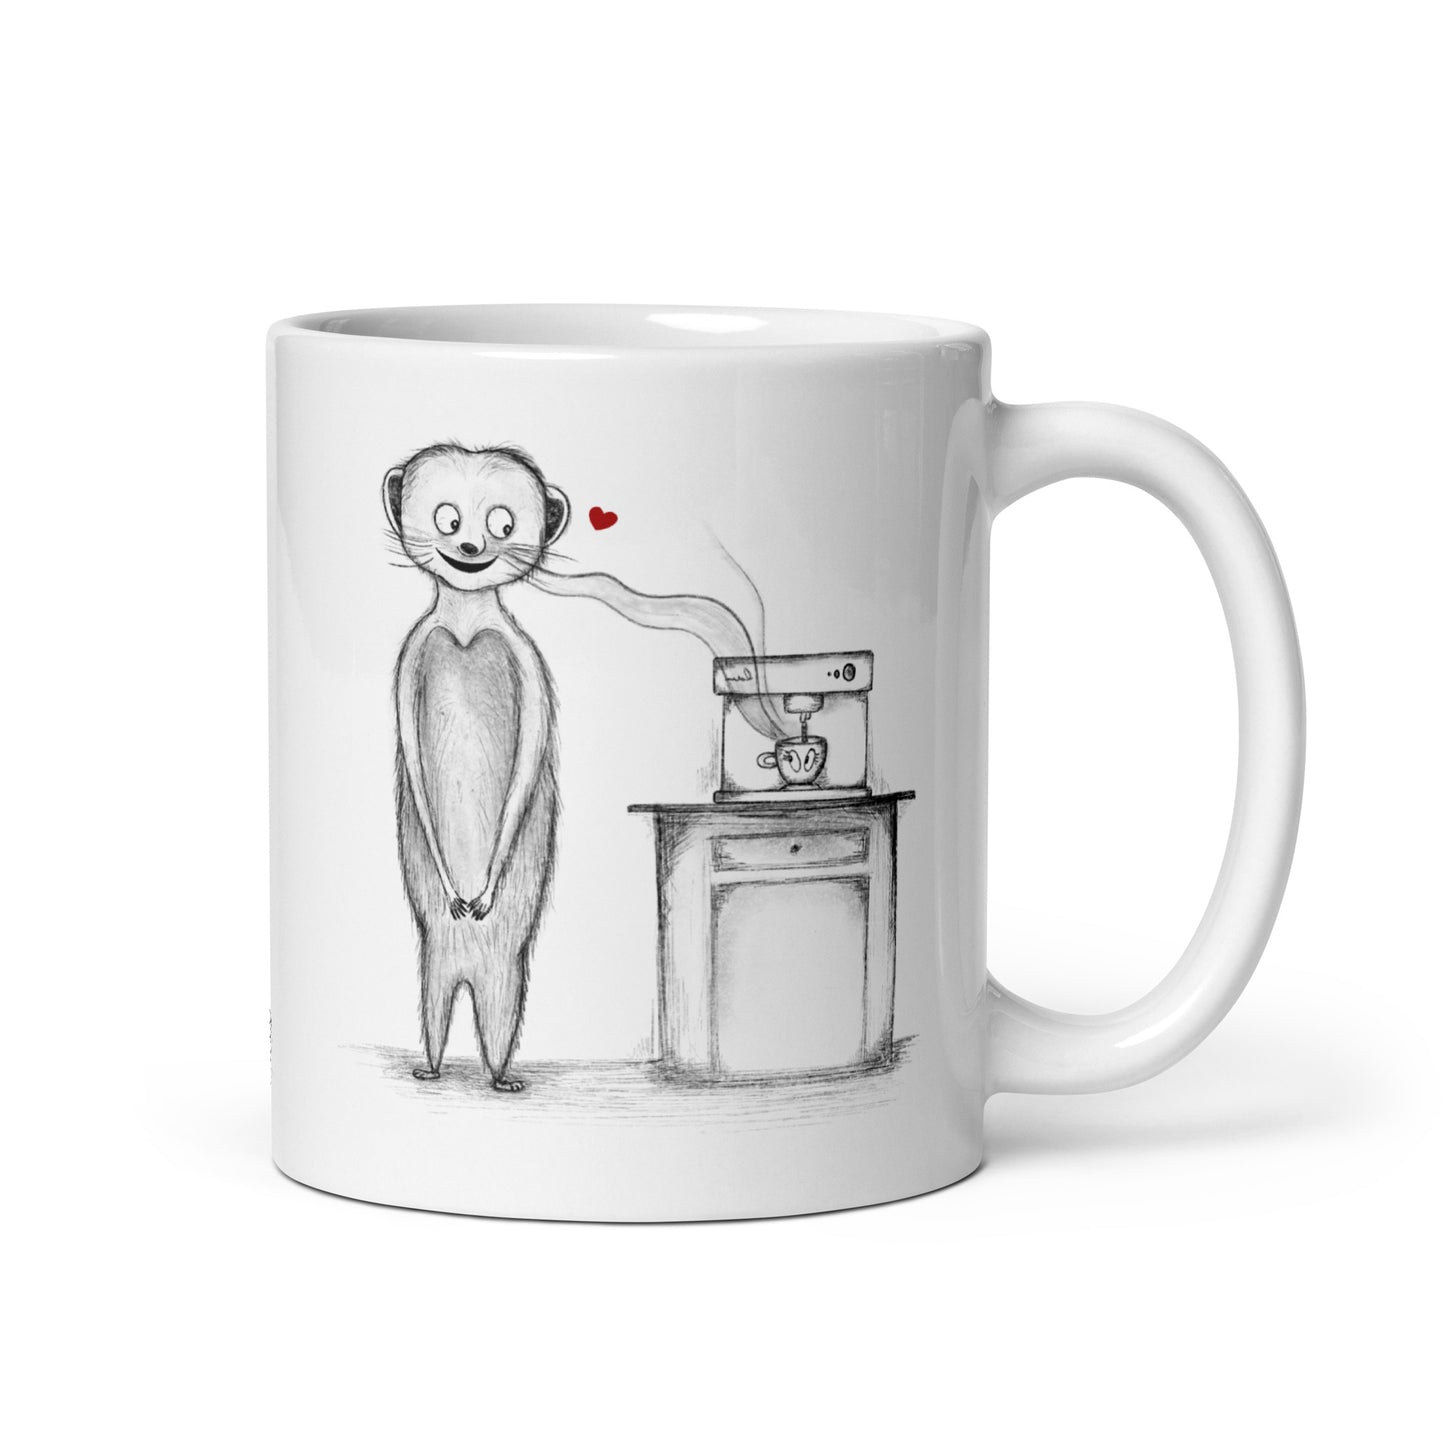 Meerkat in Love Ceramic Mug